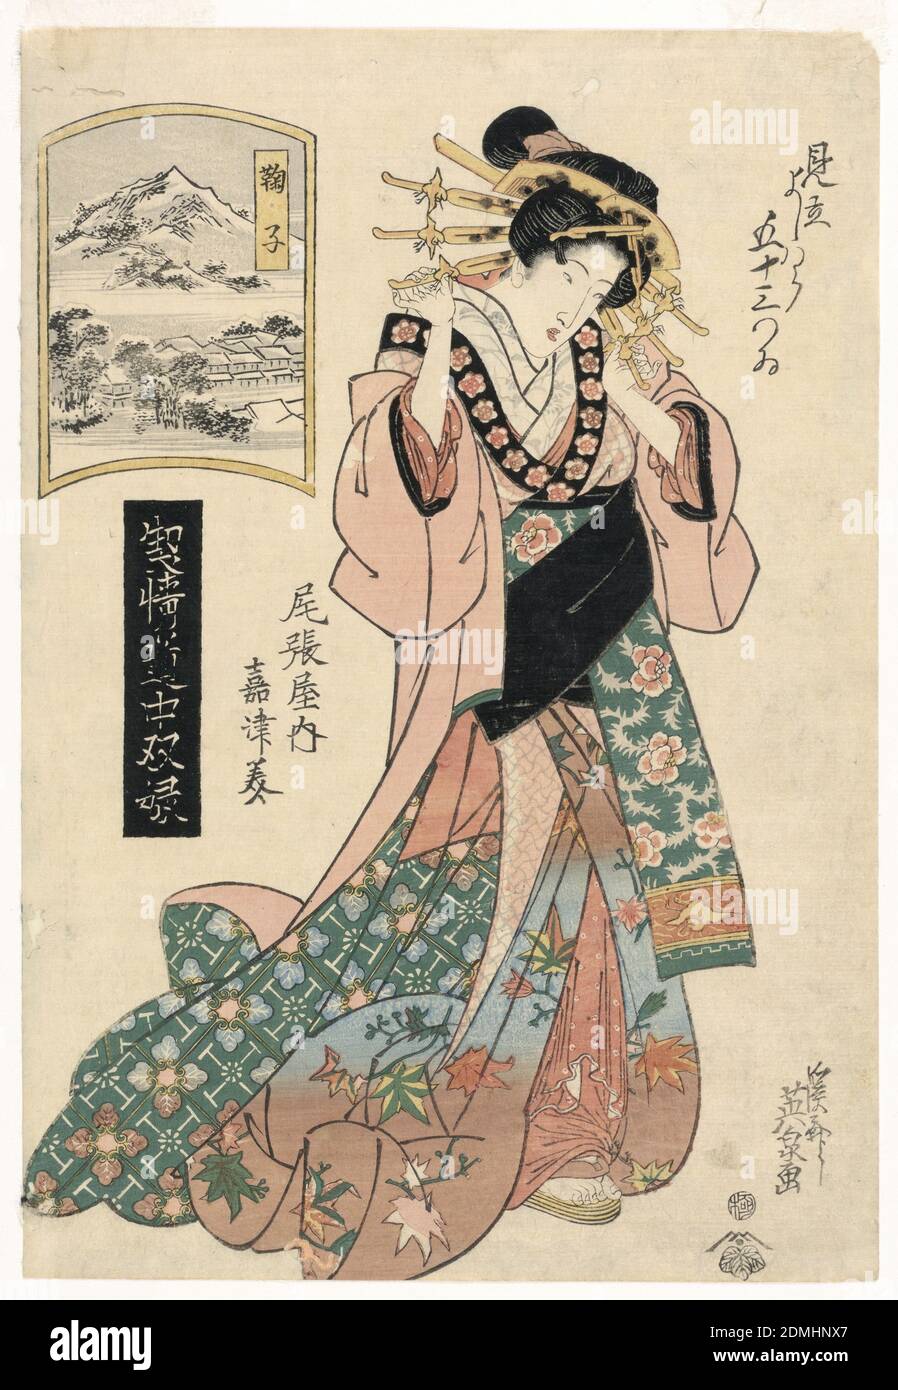 Mariko, aus der Serie, 'The Highest Ranking Geisha's Journey', Keisei Eisen, japanisch, 1790 – 1848, Woodblock-Druck in farbiger Tinte auf Papier, von Kopf bis Fuß bedeckt, ist diese gut gekleidete Frau, die dem Betrachter zugewandt, aber schier nach unten schaut. Kämme füllen ihr Haar, was ihren hohen Status als Kurtisane signalisiert. Jede ihrer Kimono-Schichten ist mit verschiedenen floralen Motiven verziert. Die rosa und grünen Variationen heben die herbstlichen Ahornblätter hervor, die die untere Hälfte ihres Gewandes schmücken. Über ihr ist ein Fenster in eine kalte Winterszene. Die Stadt und die Berggipfel sind mit Schnee bedeckt Stockfoto